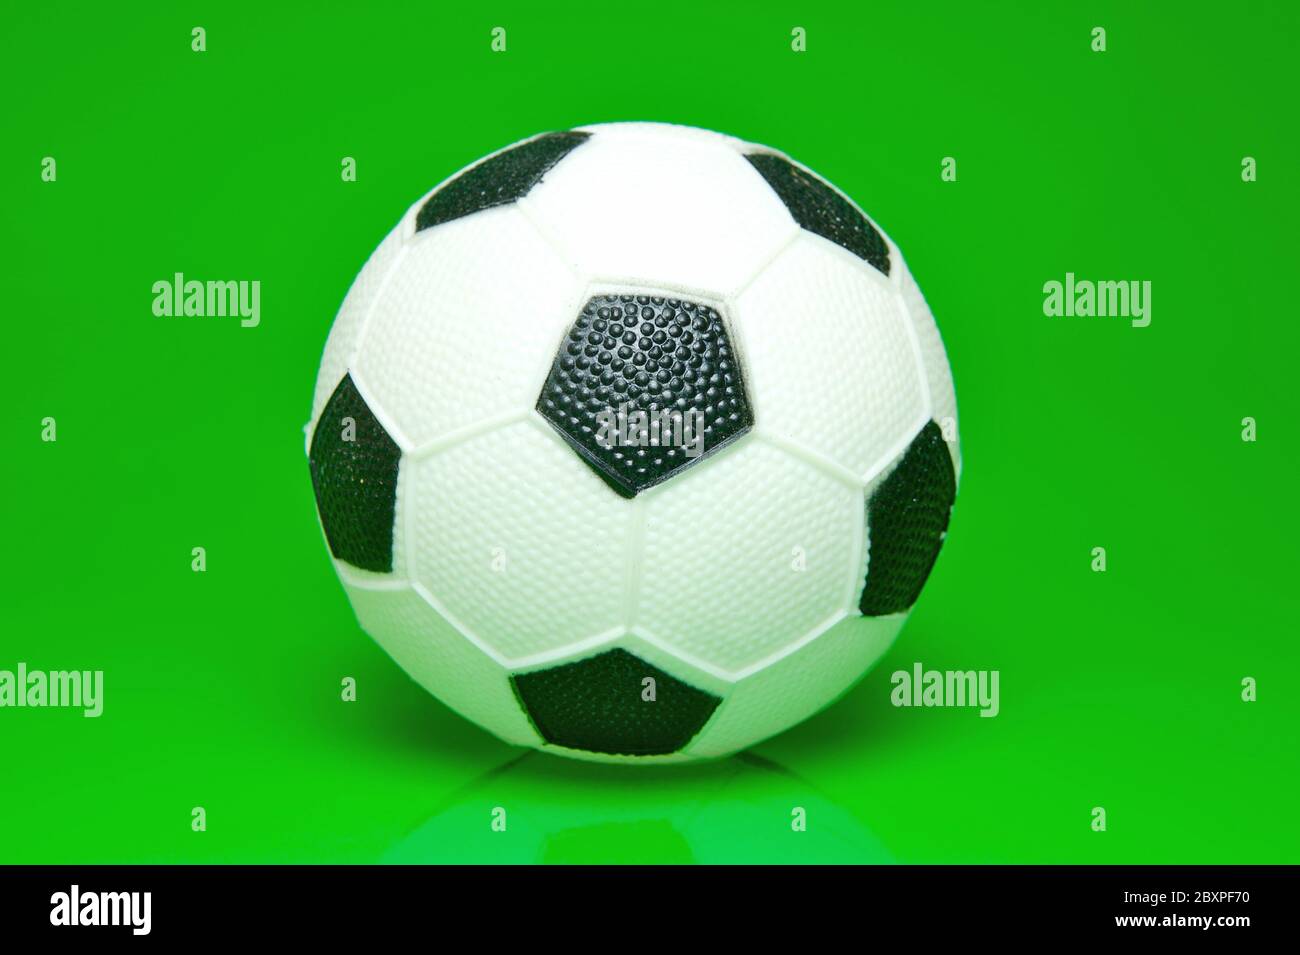 Un ballon de soccer isolé sur fond vert Banque D'Images